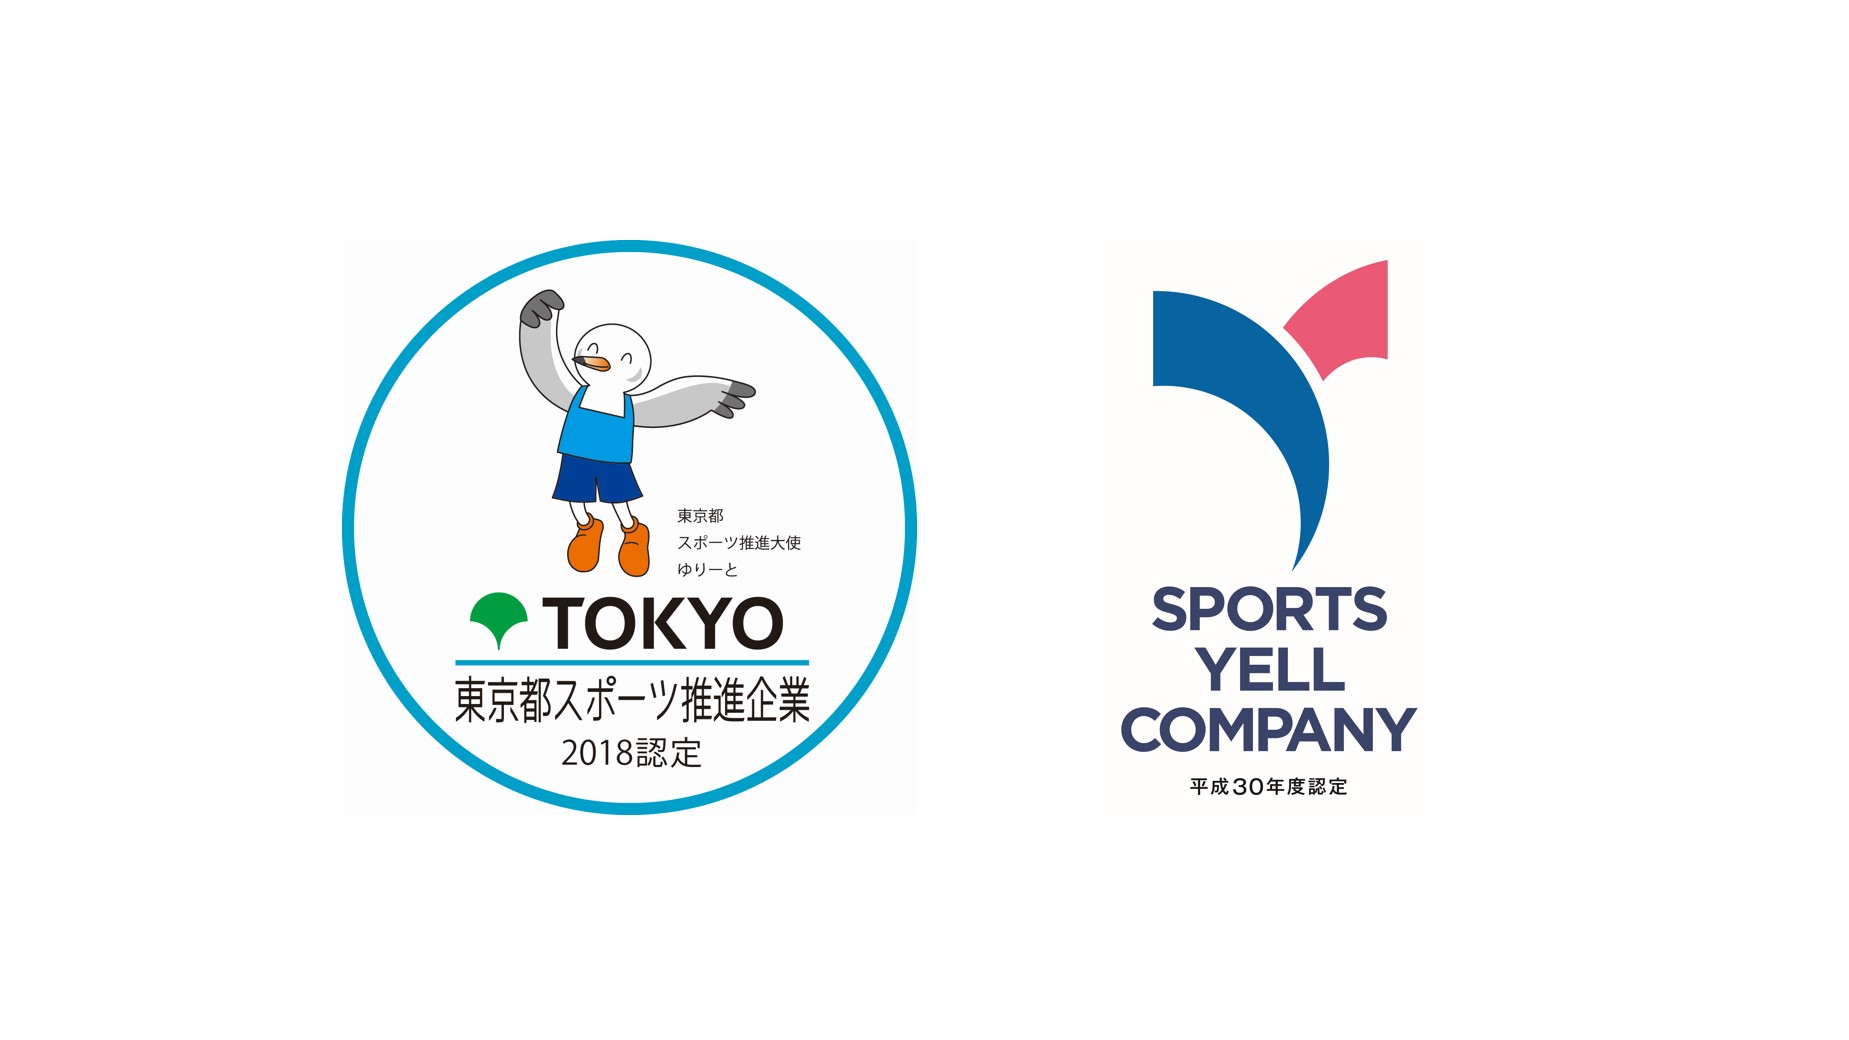 「東京都スポーツ推進企業」「スポーツエールカンパニー」に認定されました